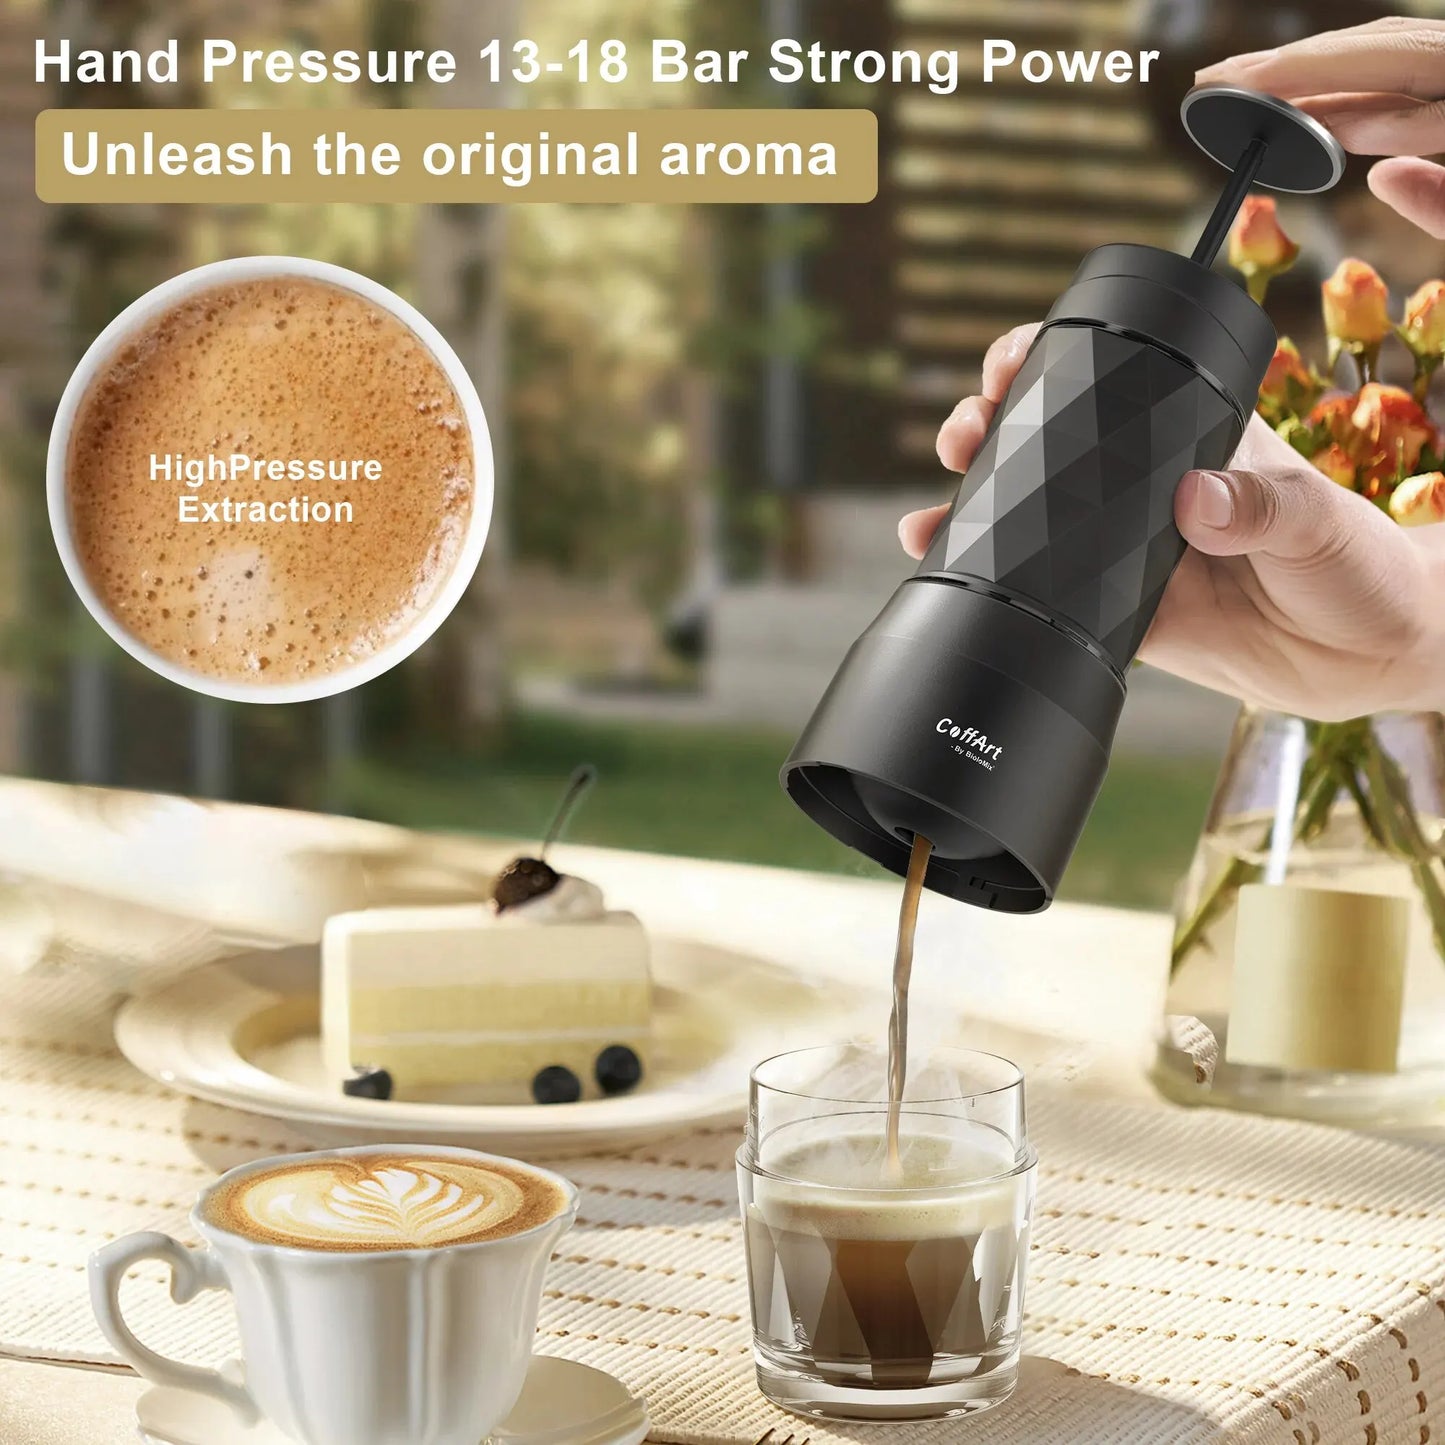 Machine à café portative Machine à expresso presse à main Capsule cafetière à café moulu Portable pour voyage et pique-nique, BioloMix